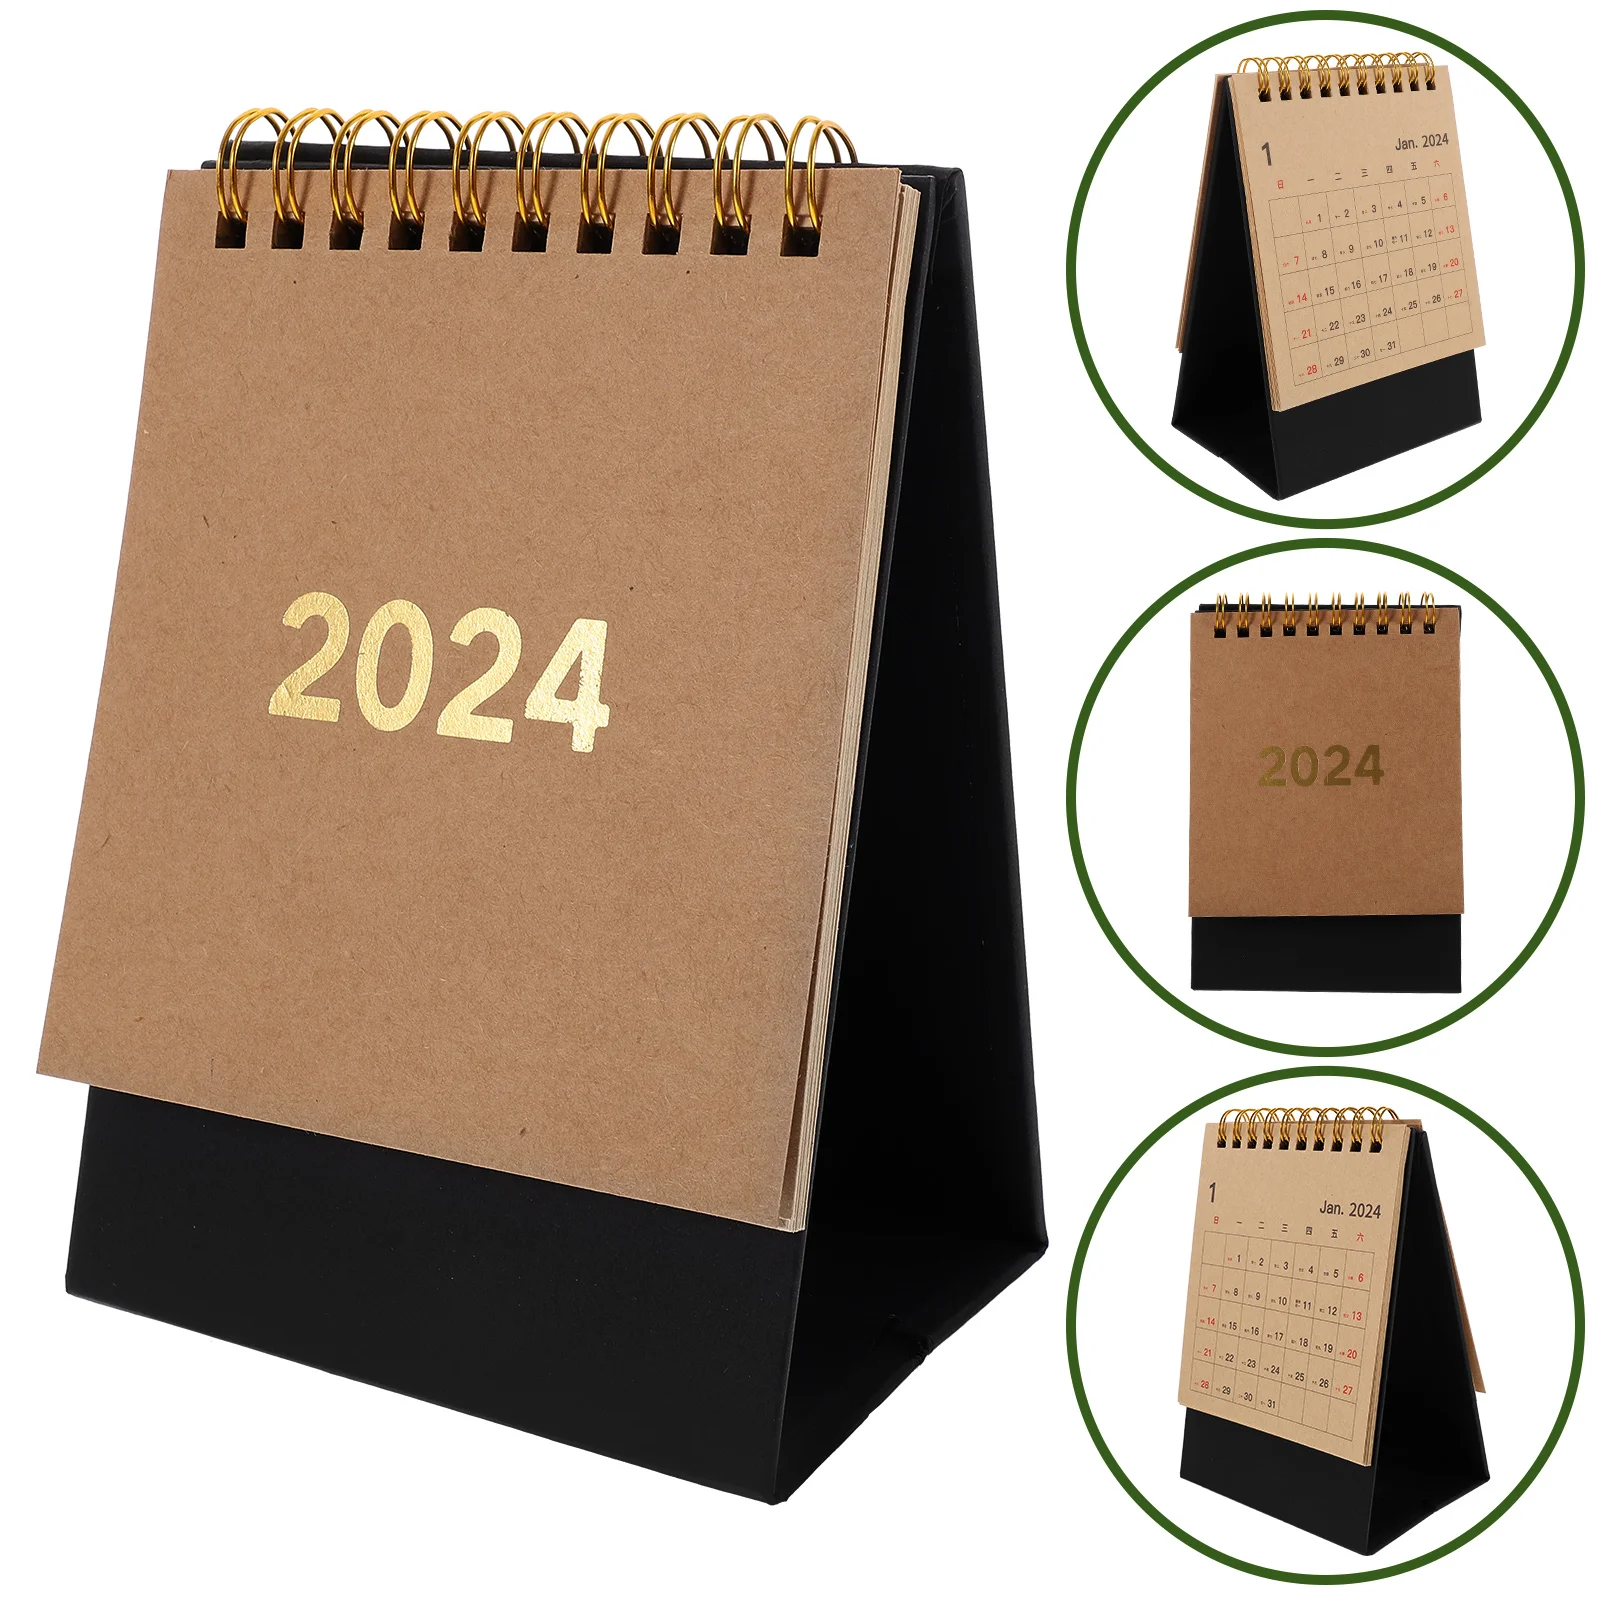 

Possible output: "Desk Calendar 2024 2025 Table Calendar Monthly Desktop Calendar Free Standing Flip Calendars